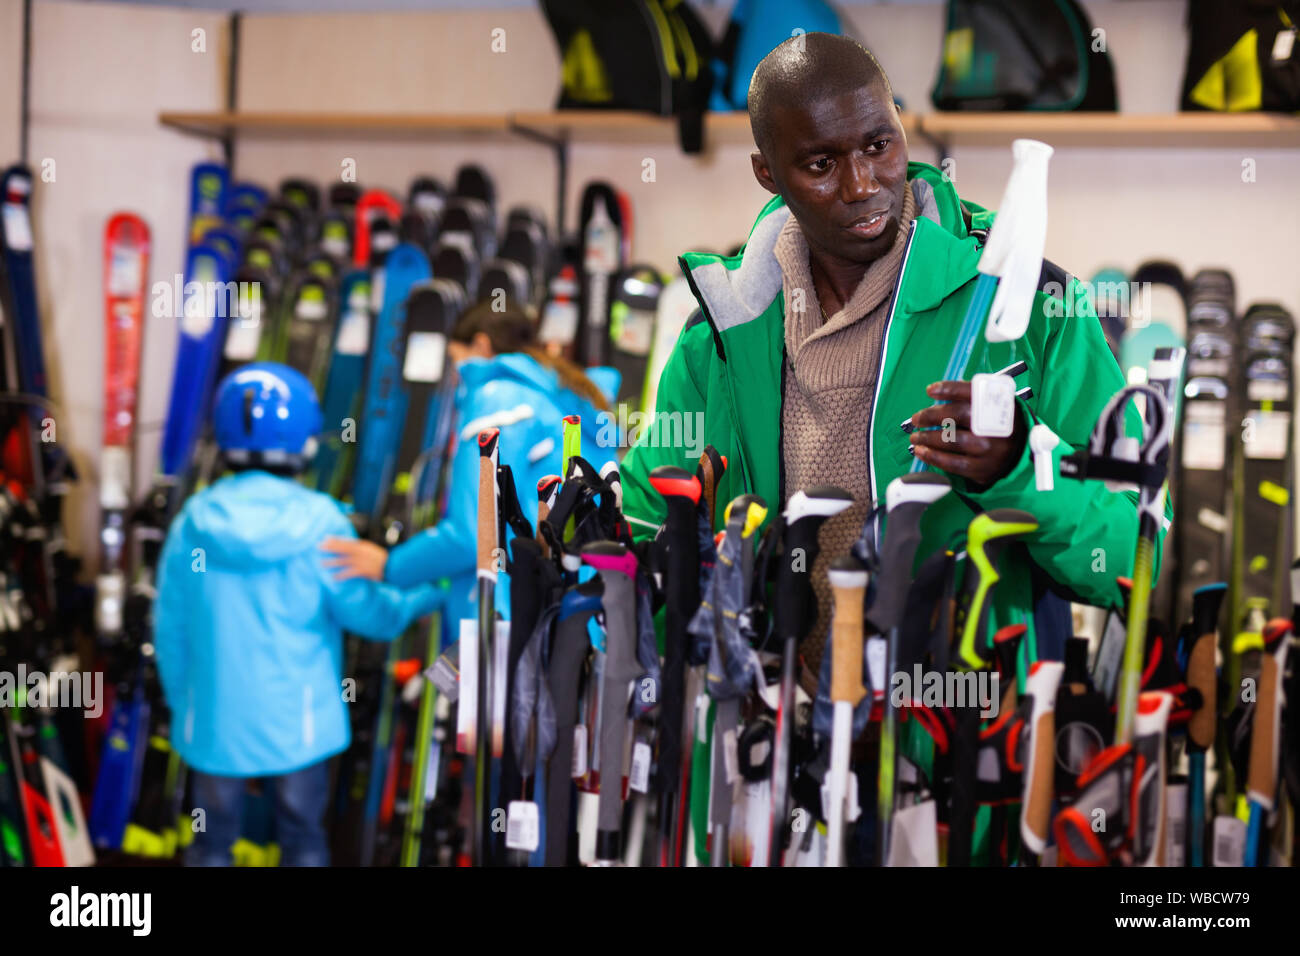 Junge fröhliche positive lächelnde African American skier Skistöcke wählen im Sport waren Store Stockfoto